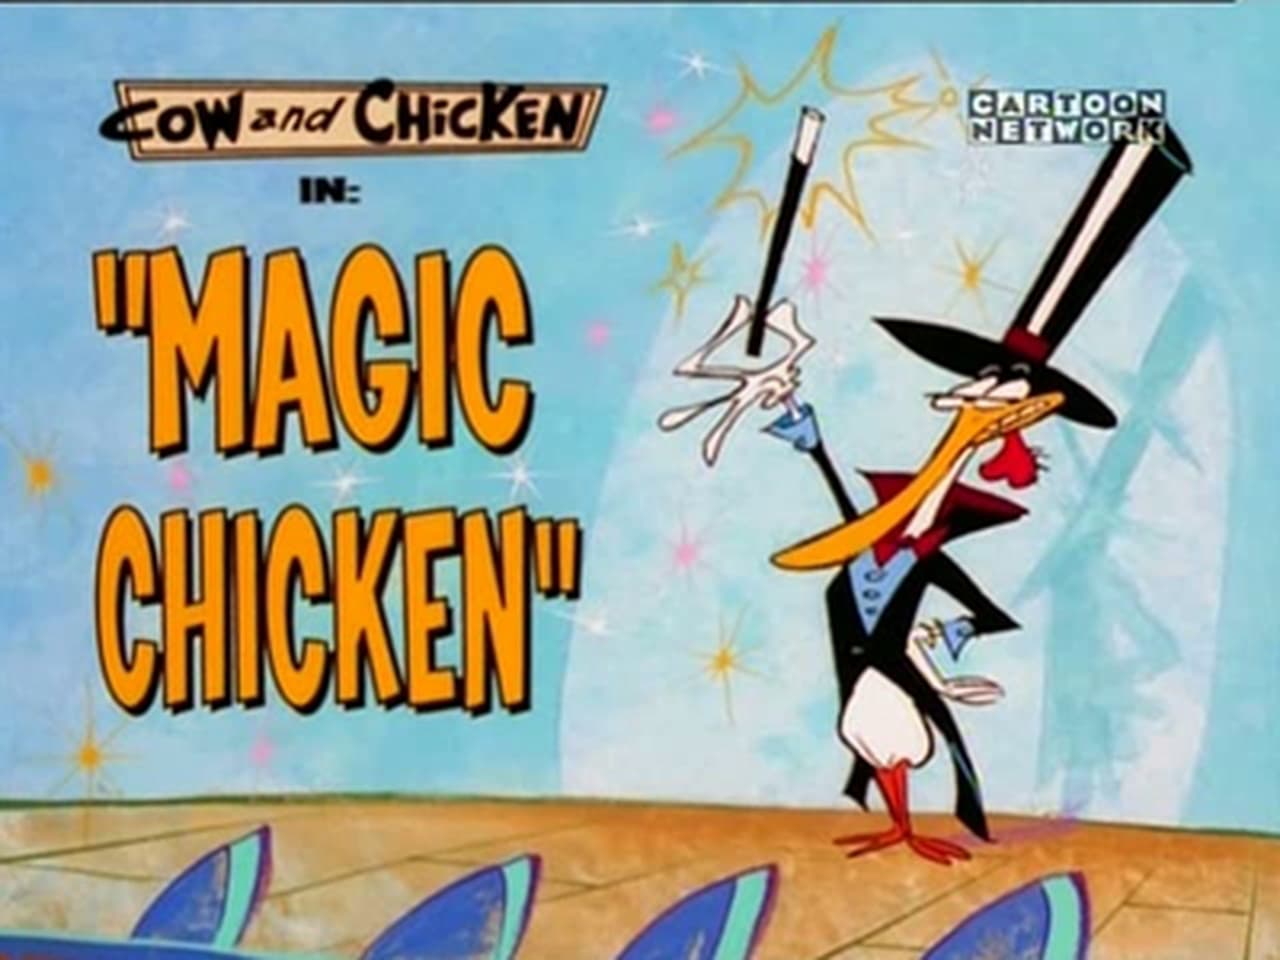 Magic Chicken